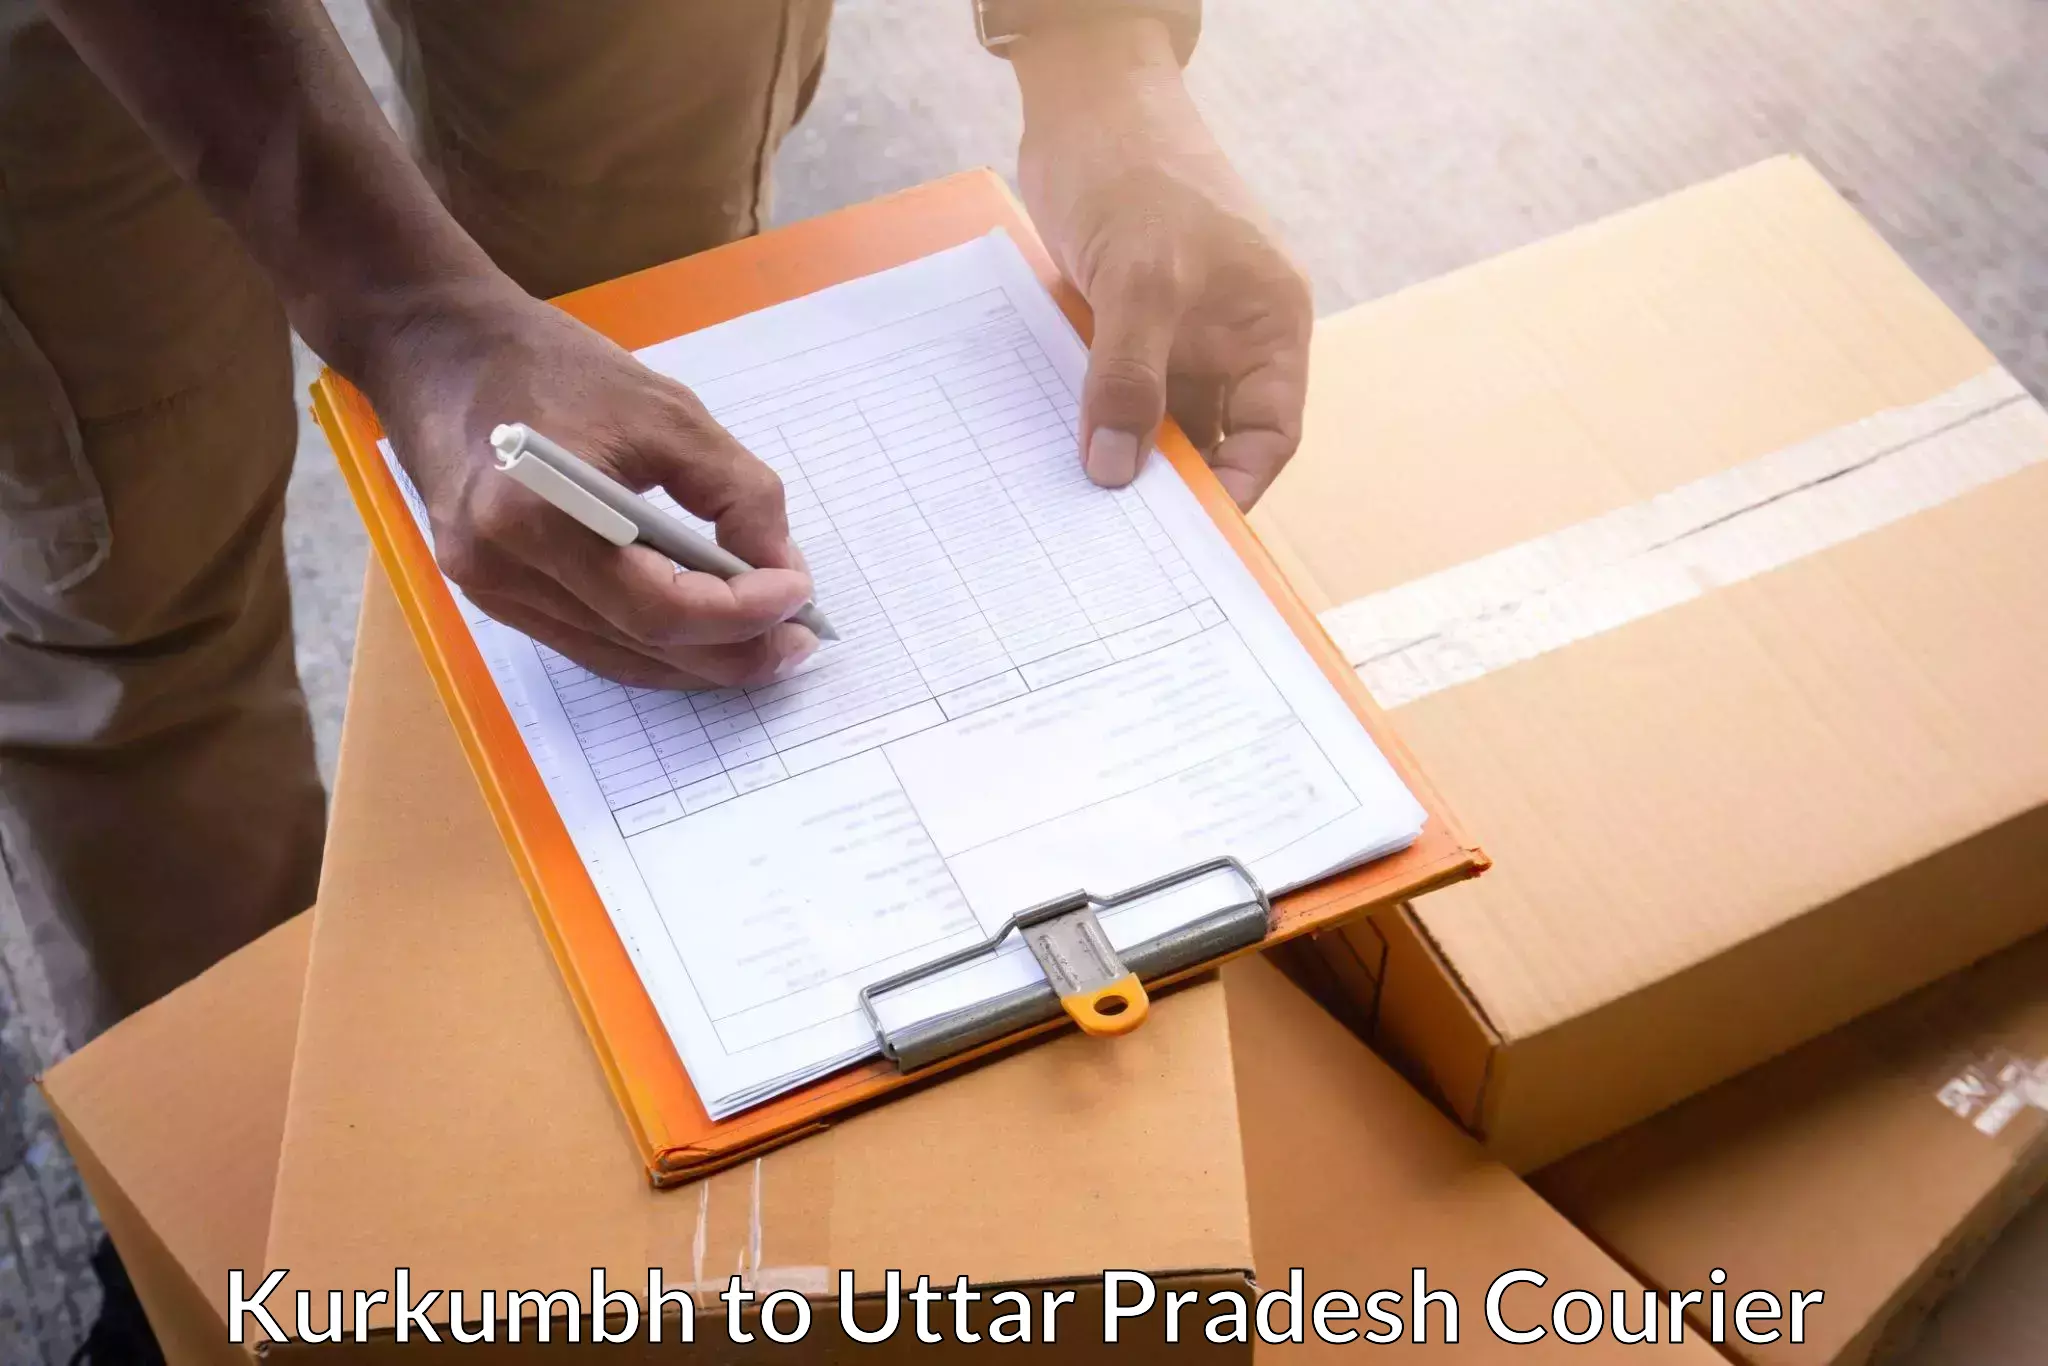 Nationwide shipping coverage Kurkumbh to IIT Kanpur